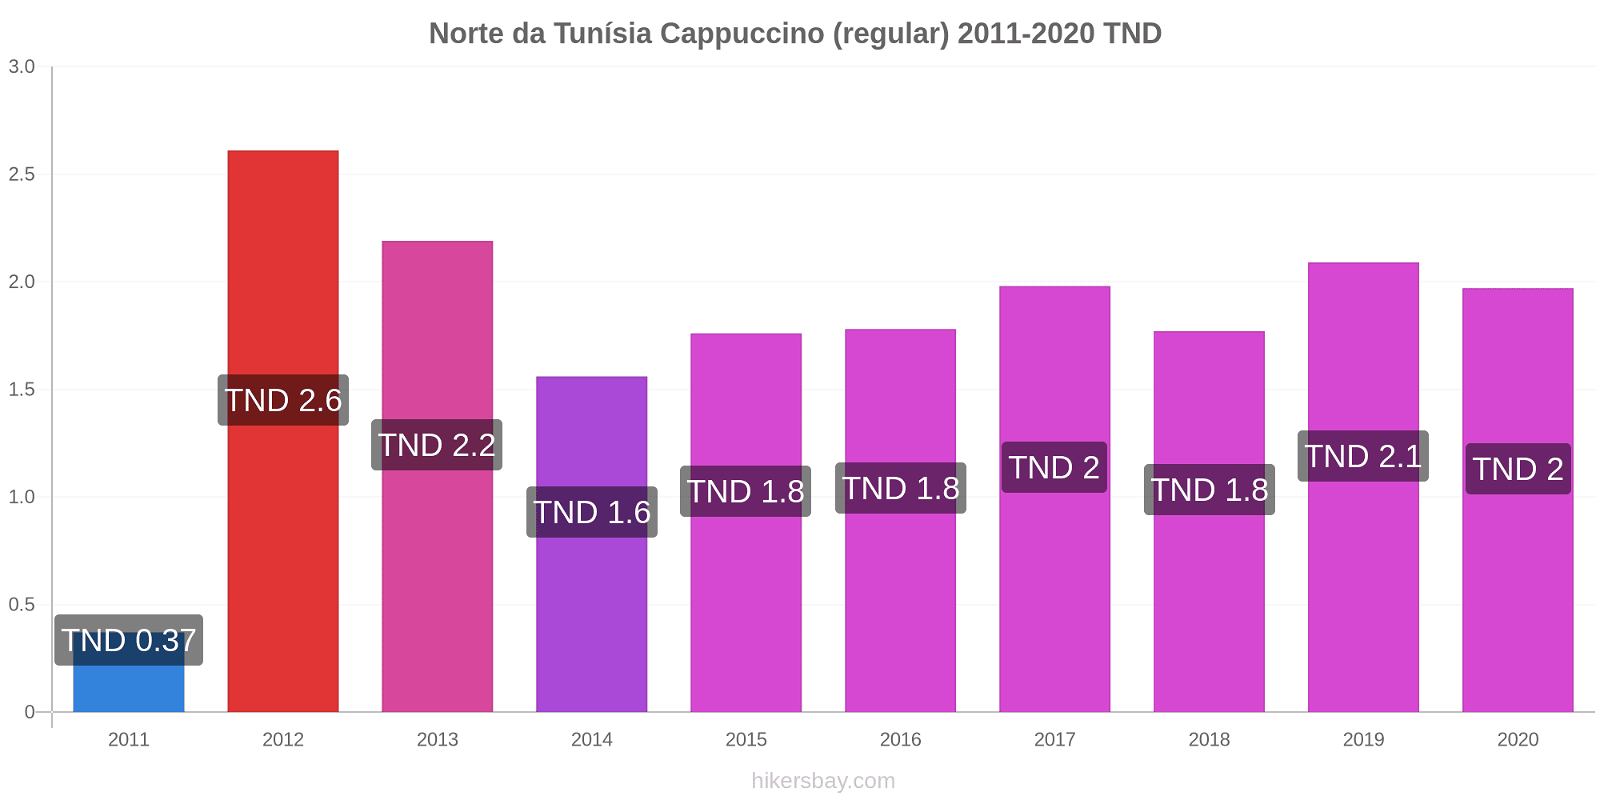 Norte da Tunísia variação de preço Capuccino (regular) hikersbay.com